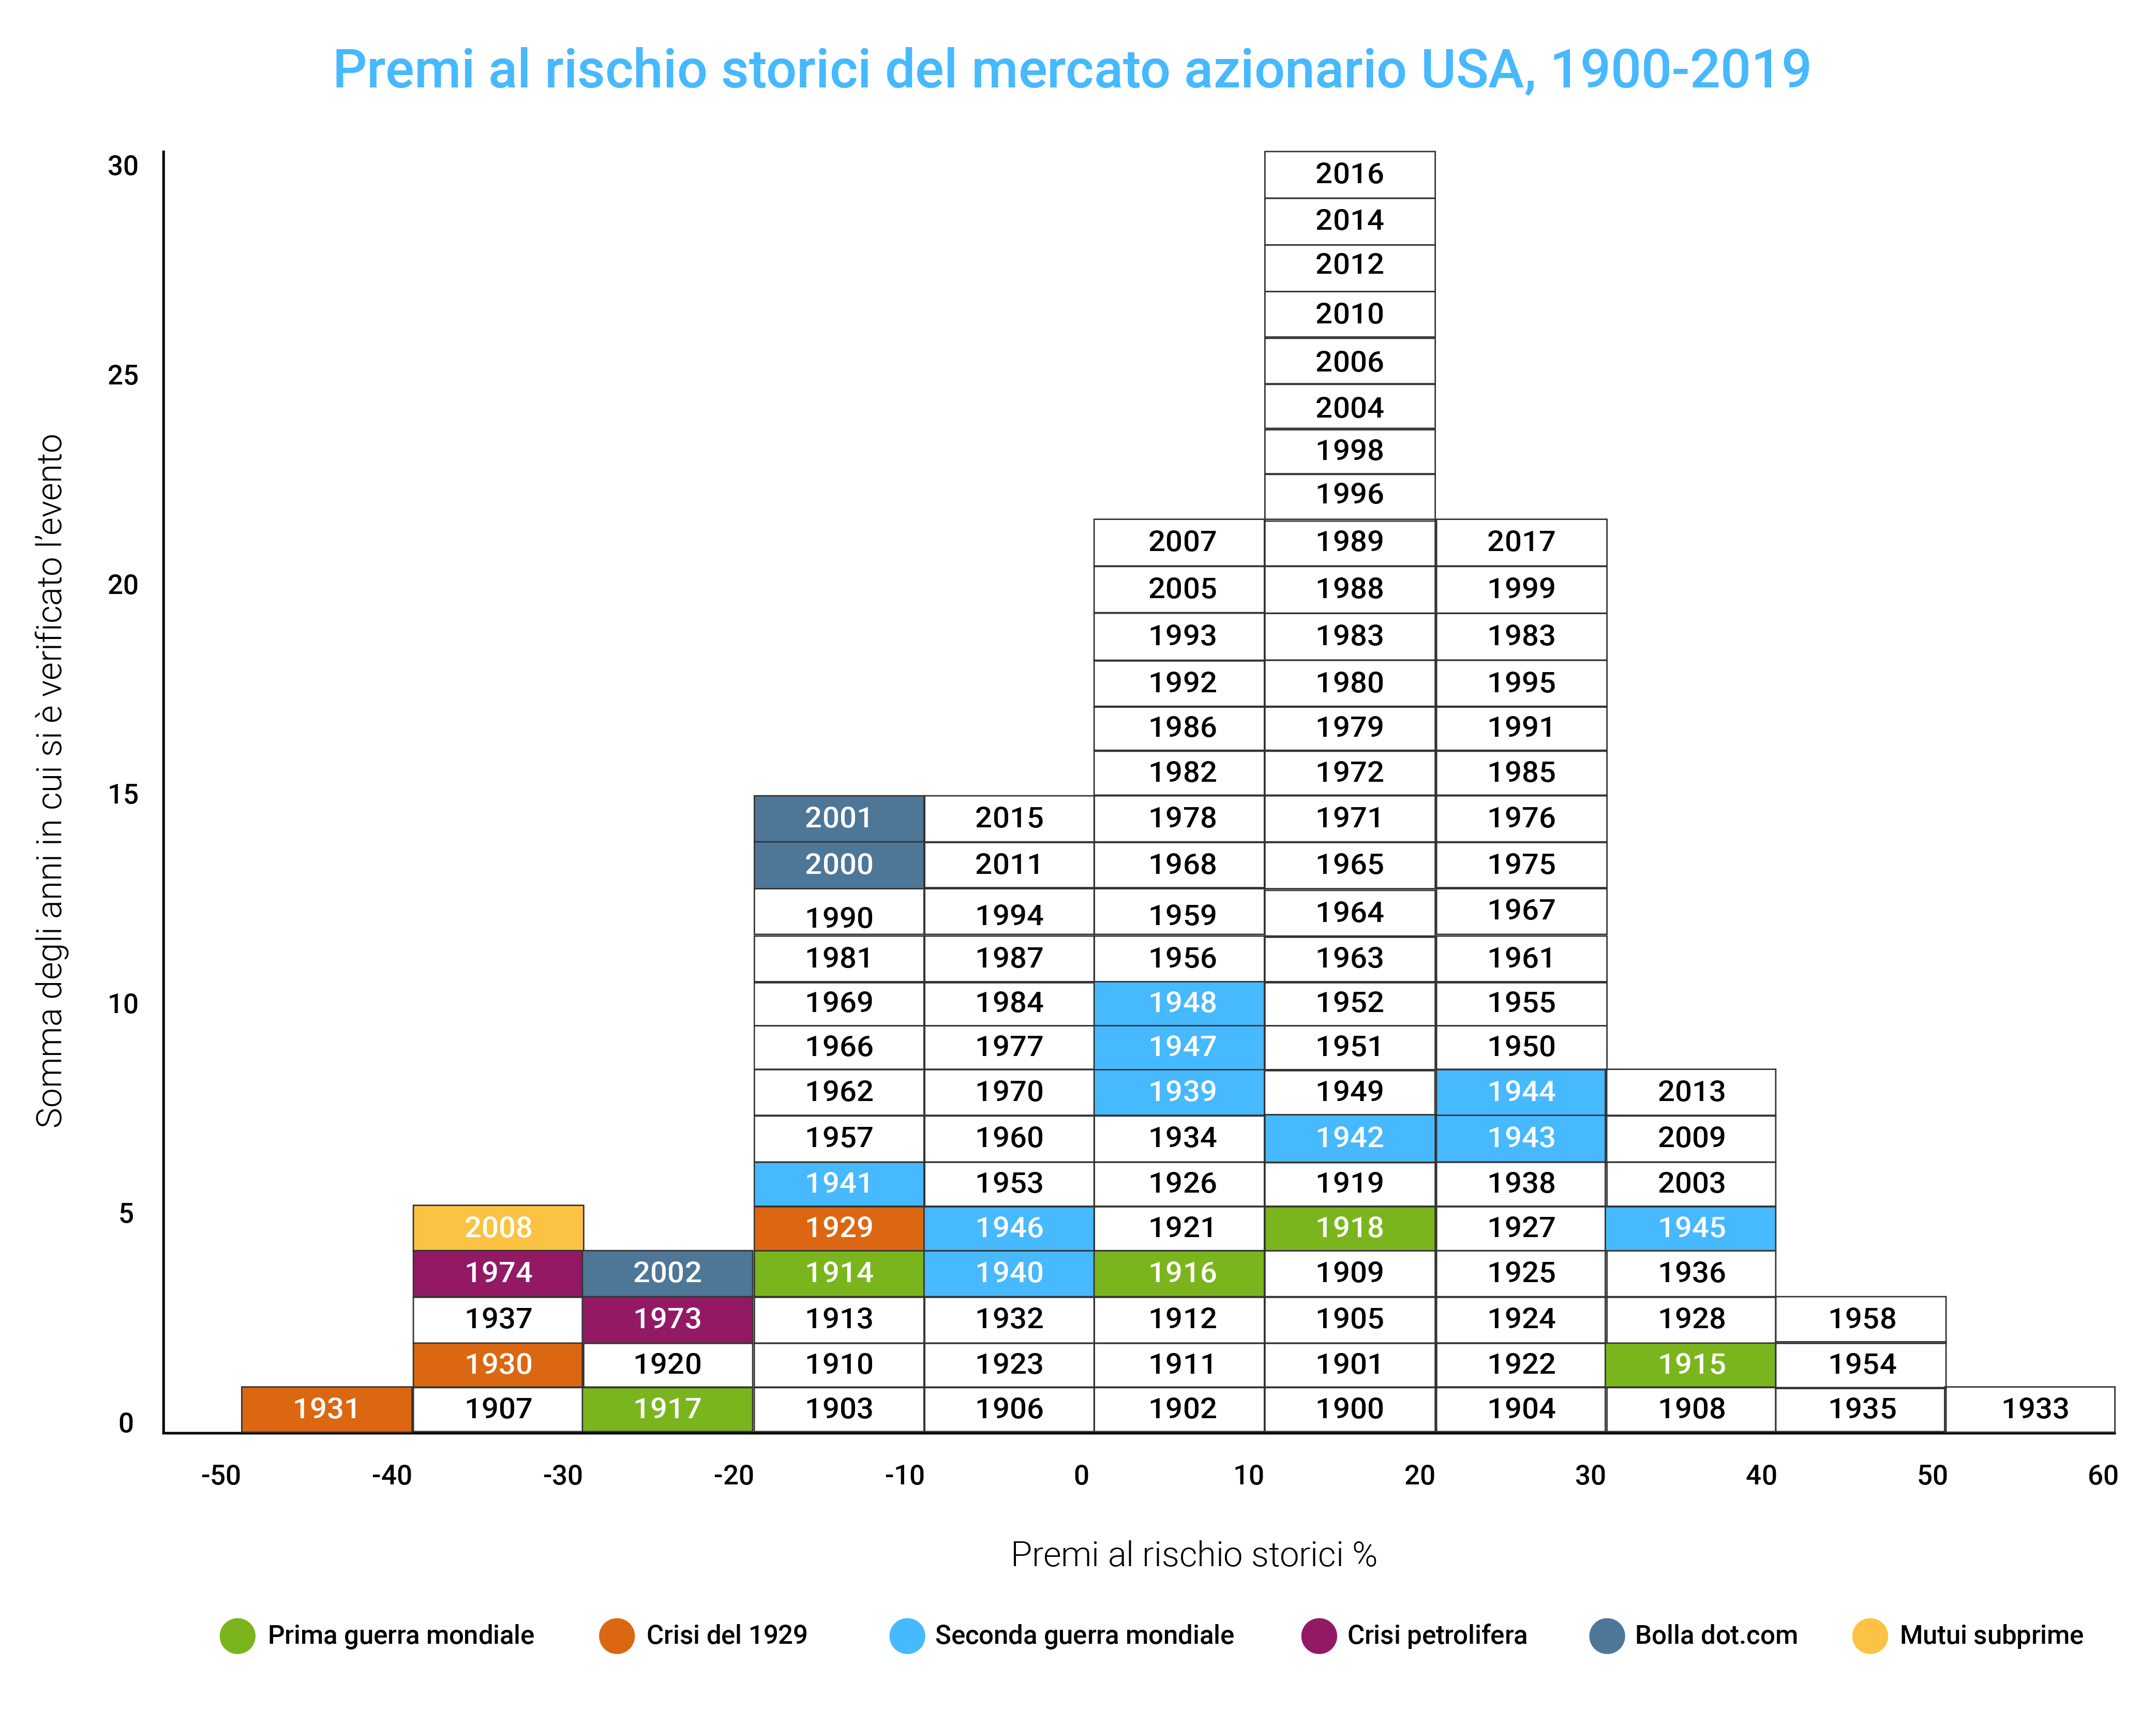 Premi al rischio storici del mercato azionario USA, 1900-2019